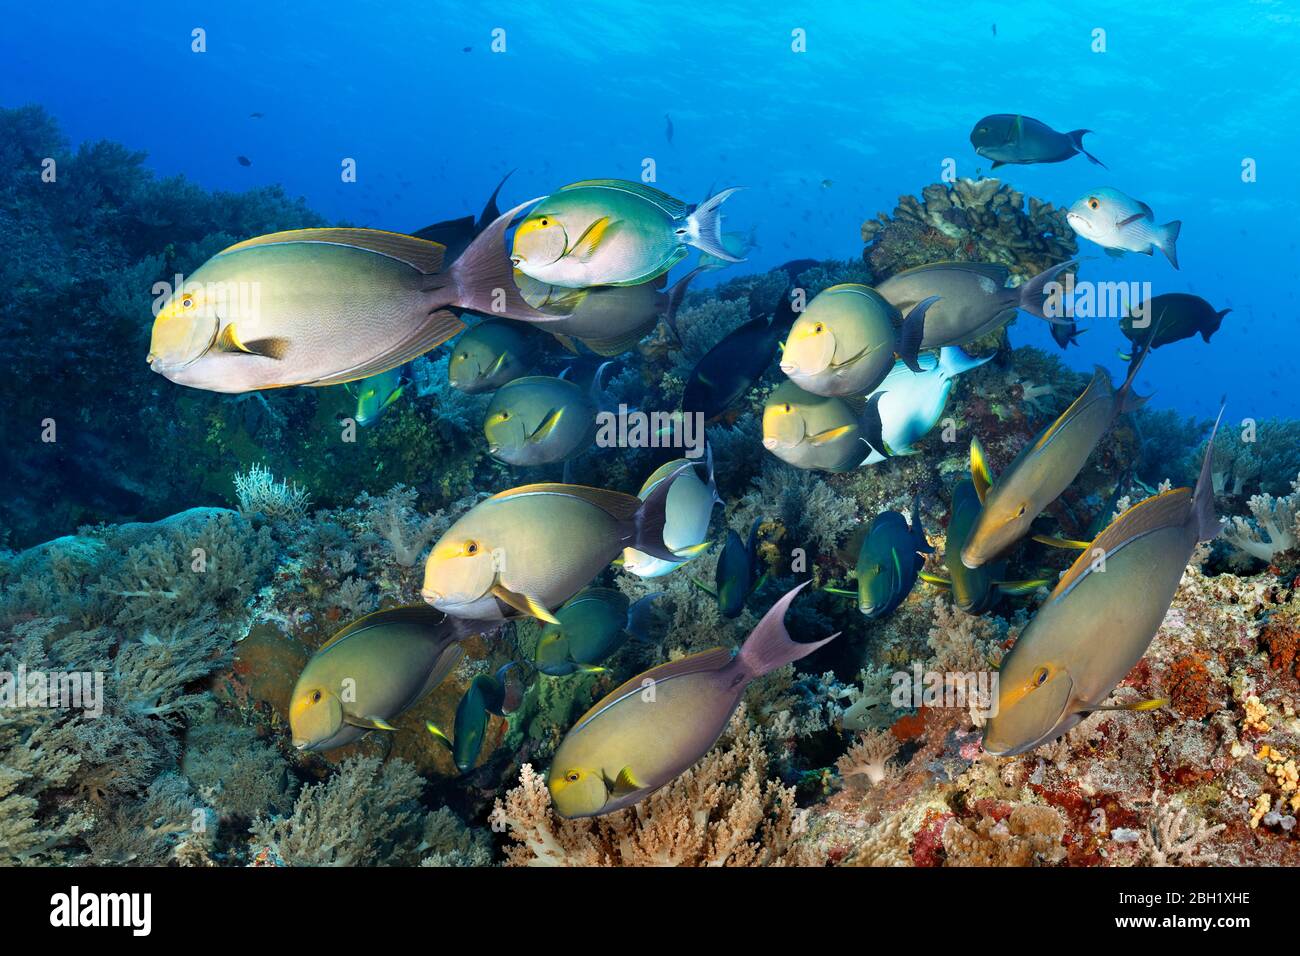 Enjambre de peces peces surgeonfish de aleta amarilla (Acanthurus xanthopterus), natación sobre arrecifes de coral, Océano Pacífico, Lago Sulu, Tubbataha Reef National Marine Foto de stock